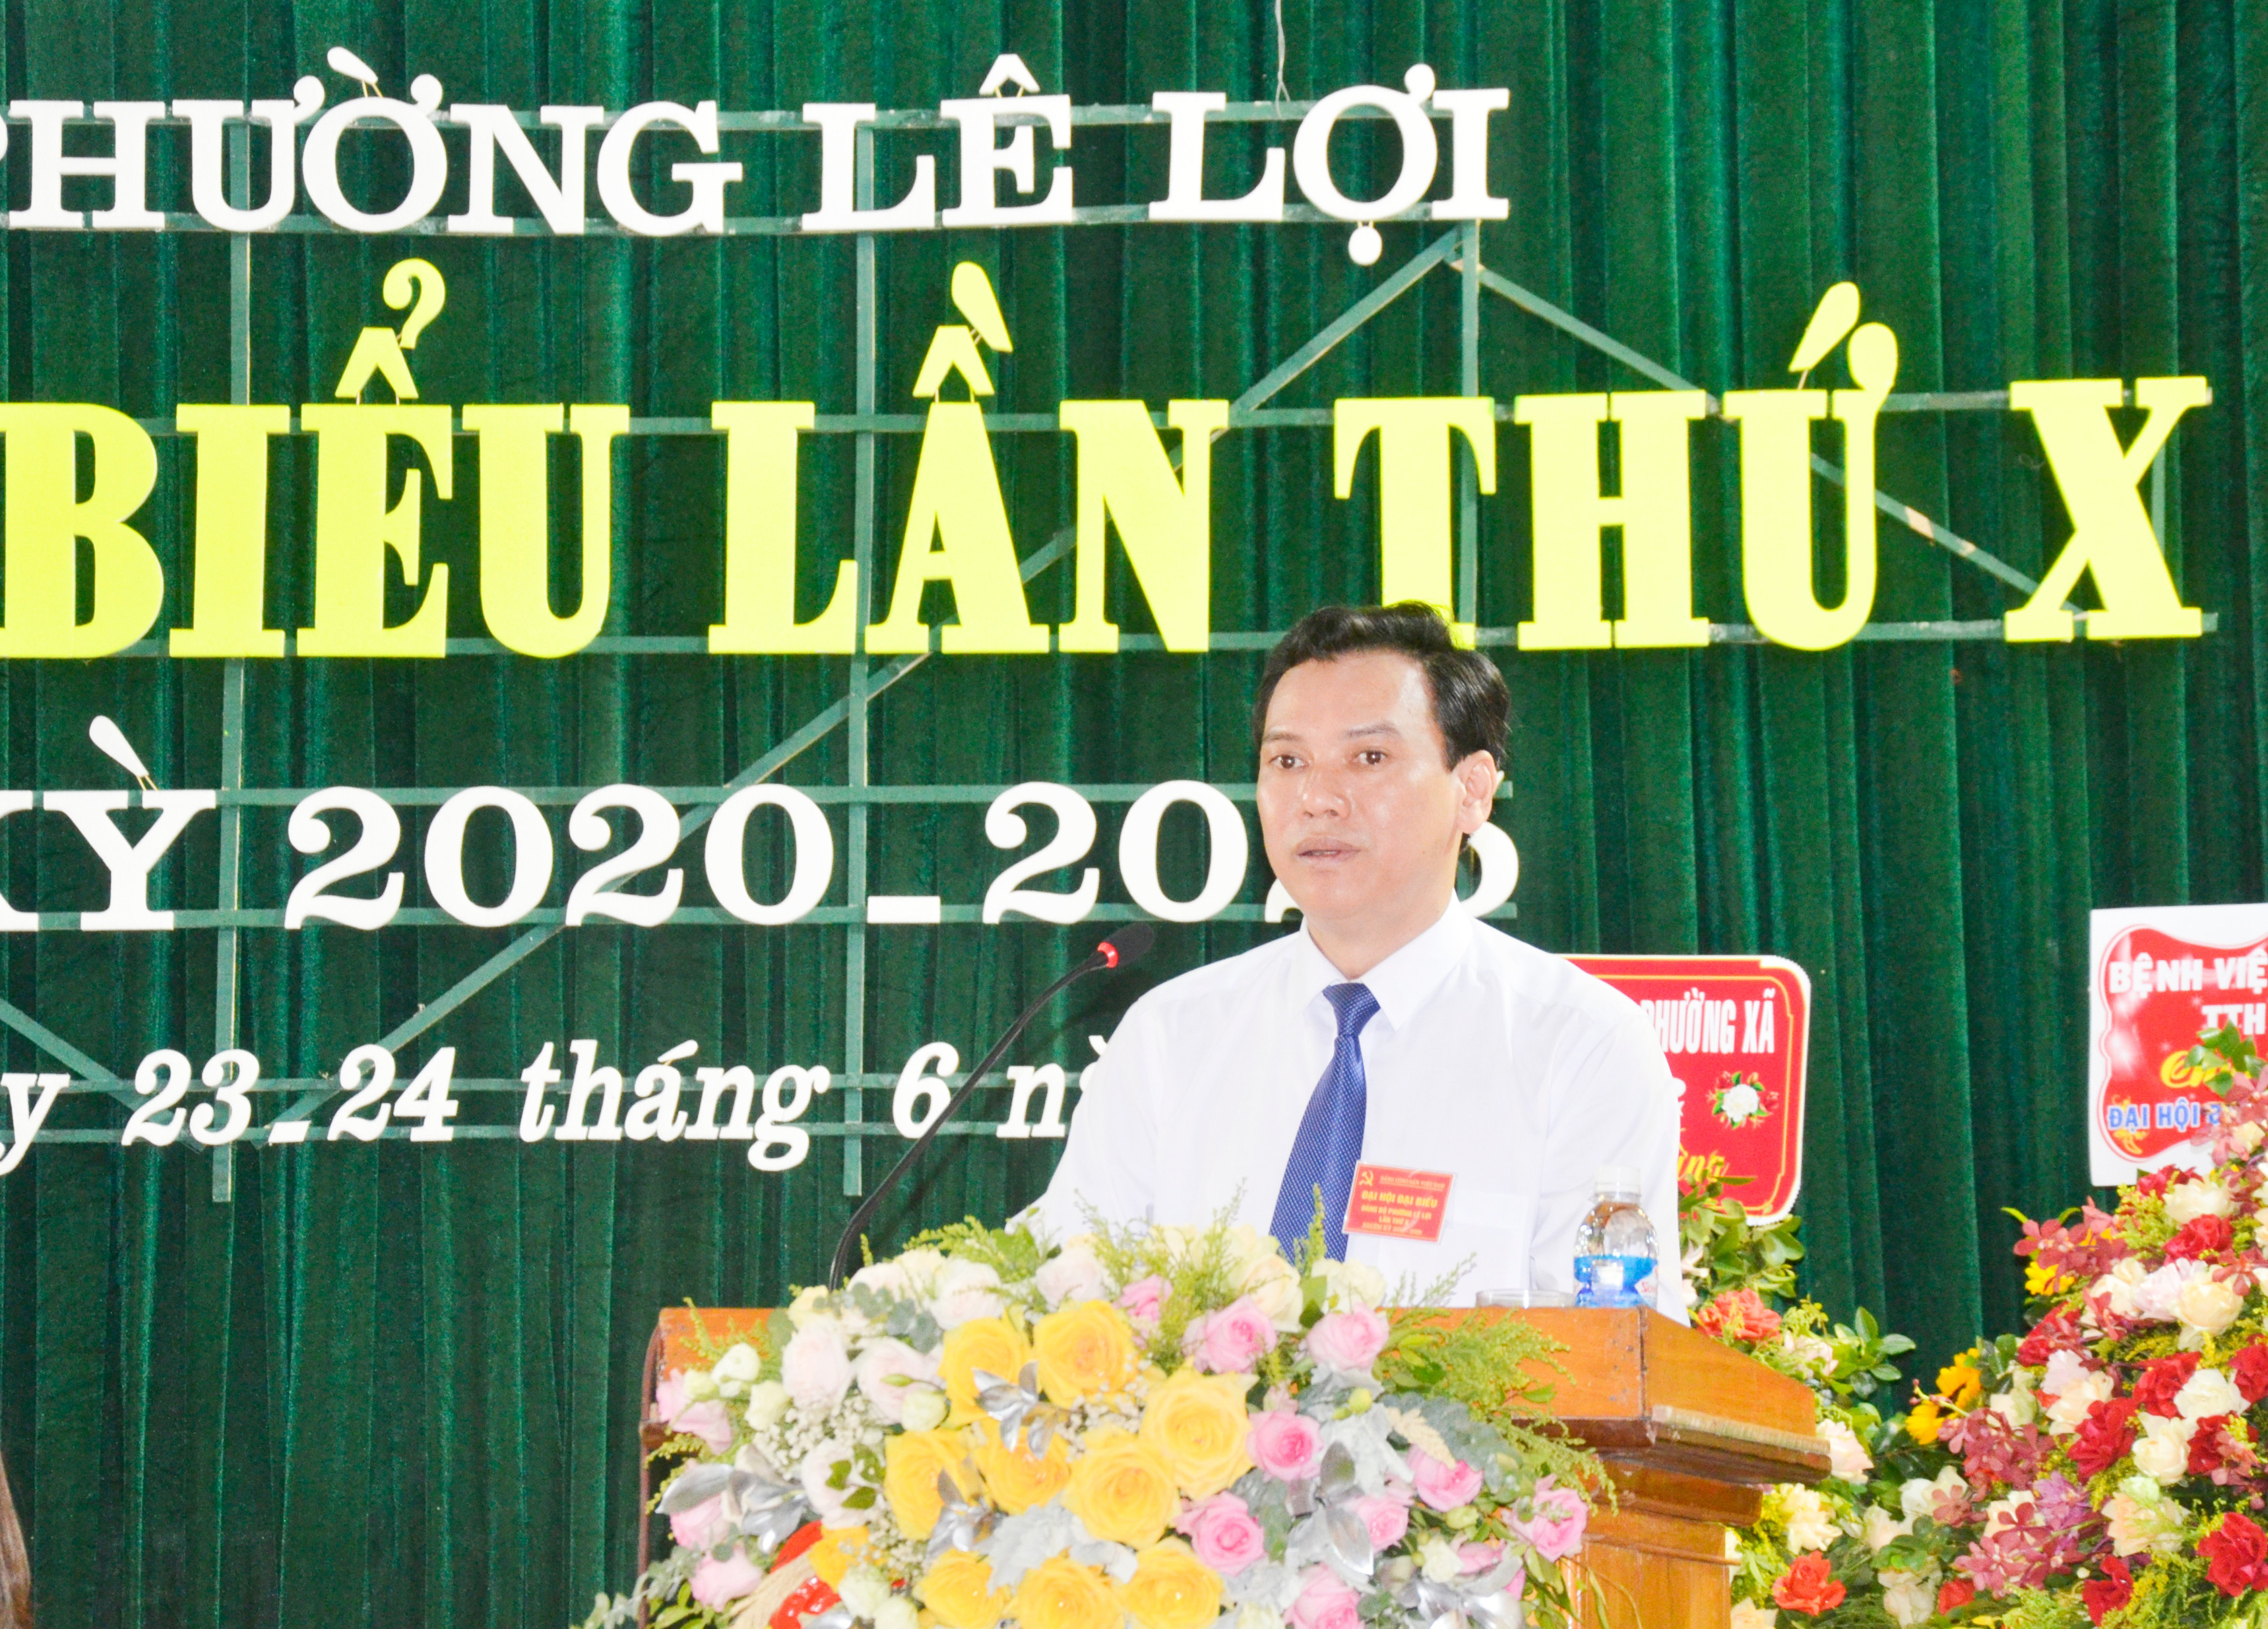 Bí thư Đảng ủy phường Lê Lợi (TP Vinh) Lê Văn Long trình bày báo cáo chính trị tại đại hội. Ảnh: Thanh Lê